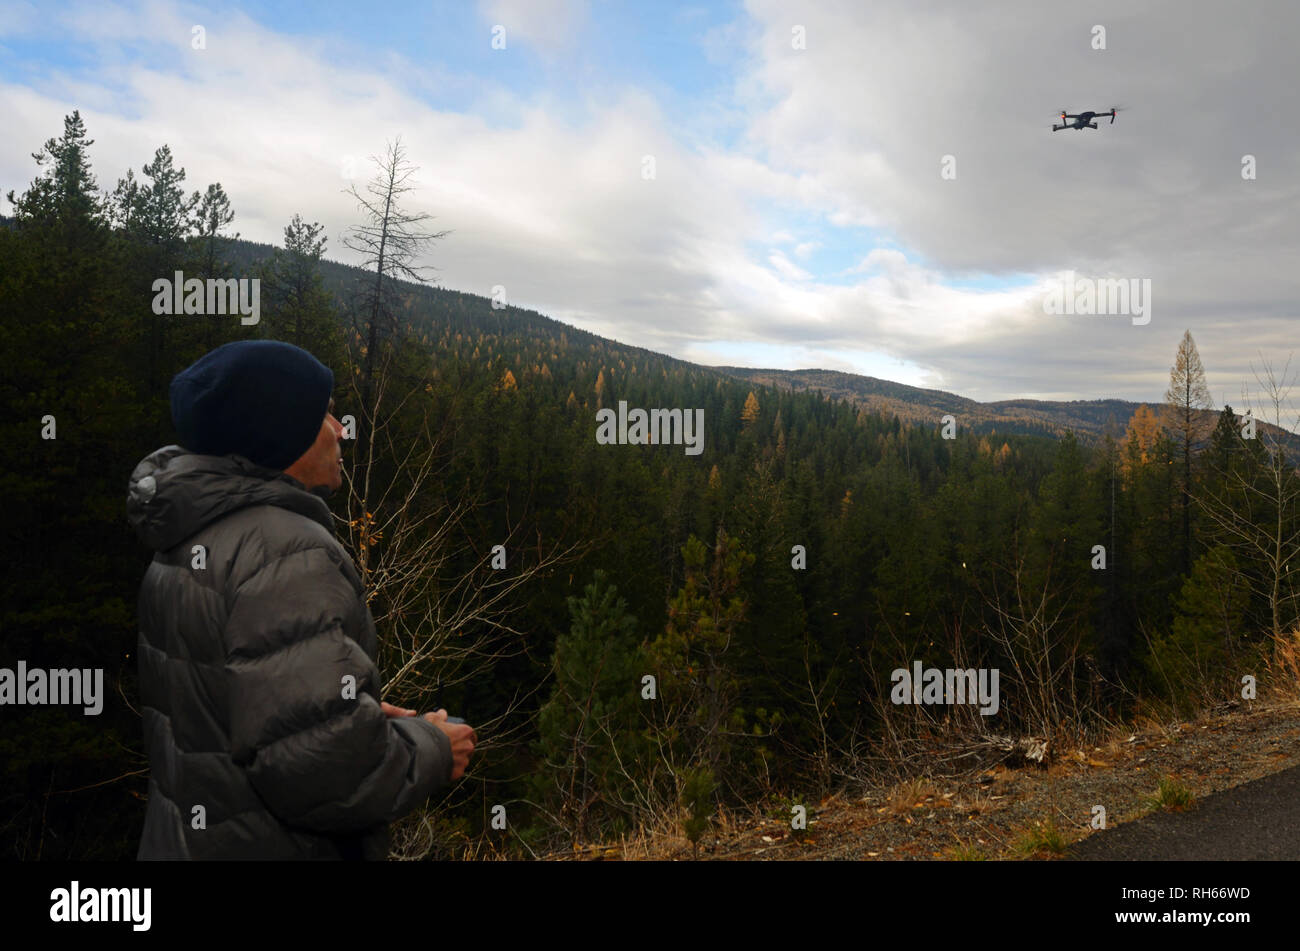 Il regista gestisce un drone DJI Mavic Pro durante una sessione di videografia nelle Purcell Mountains, Montana. (Foto di Randy Beacham) Foto Stock